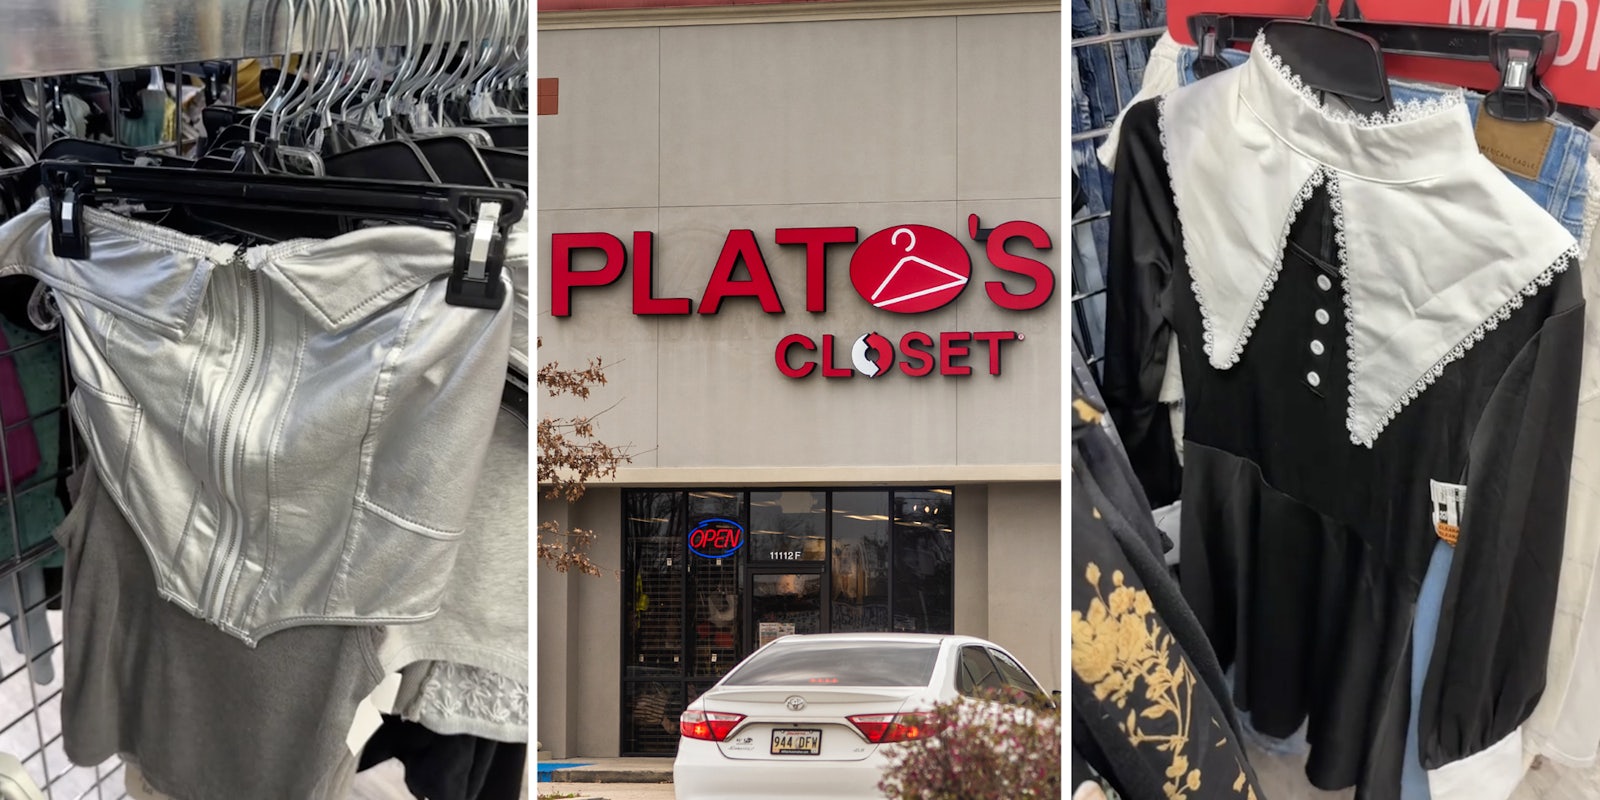 Clothes on racks(l+r), Plato's Closet storefront(c)